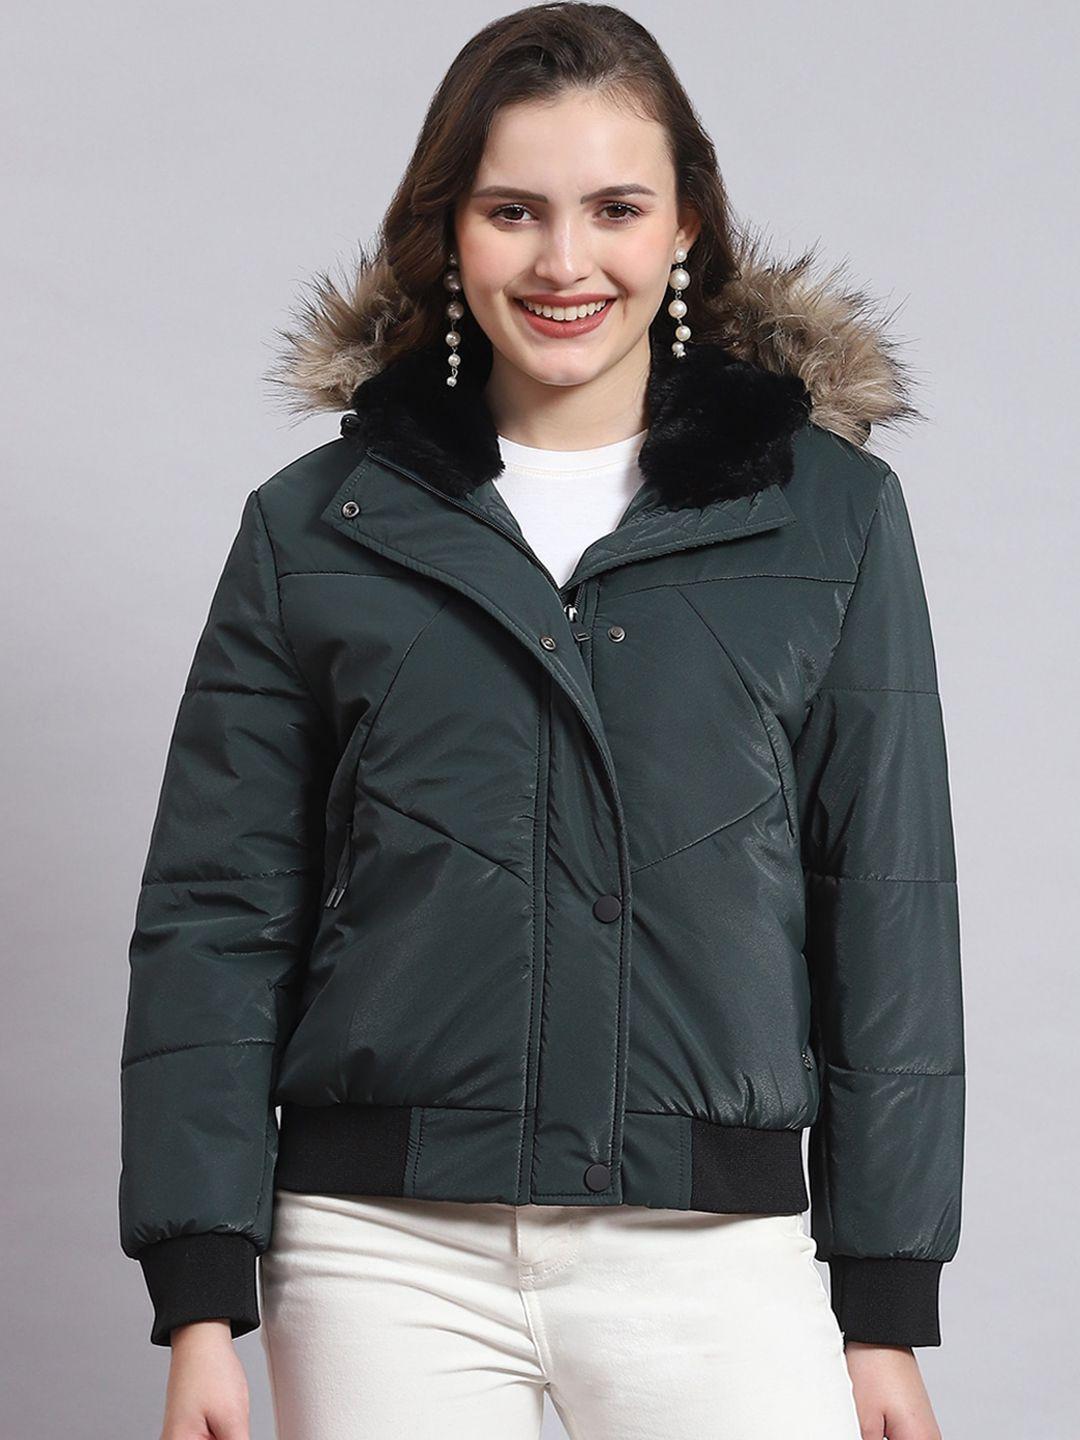 Monte Carlo Long Sleeves Lightweight Hood Fur Padded Jacket